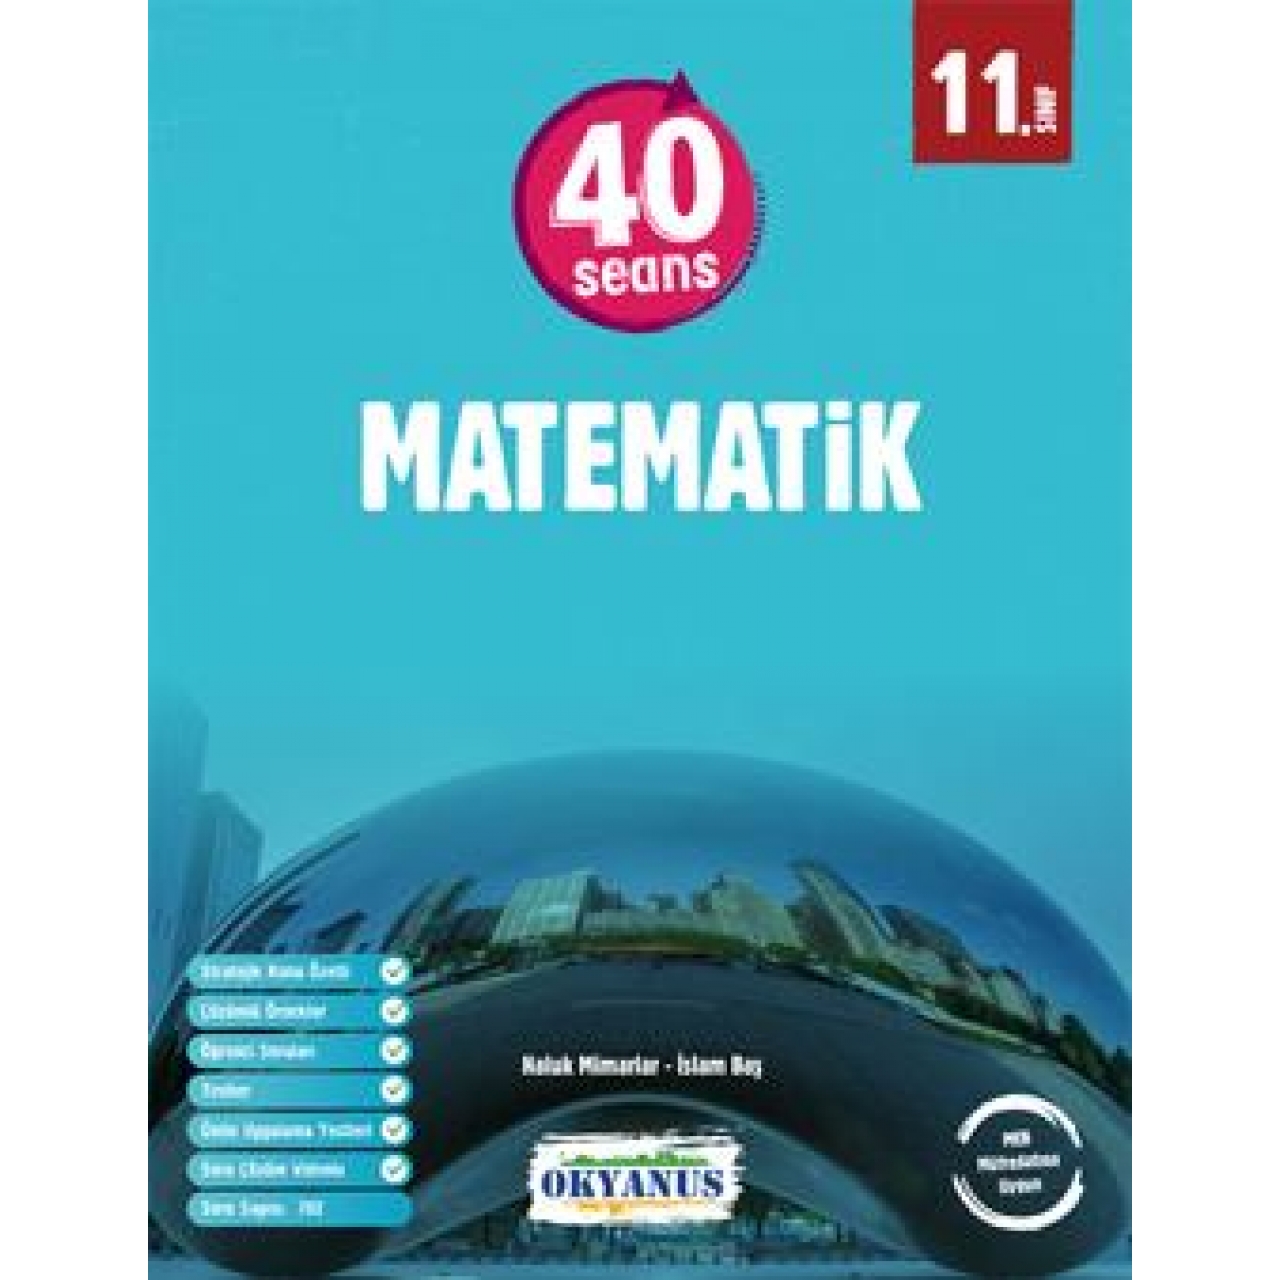 11. Sınıf 40 Seans Matematik Okyanus Yayınları